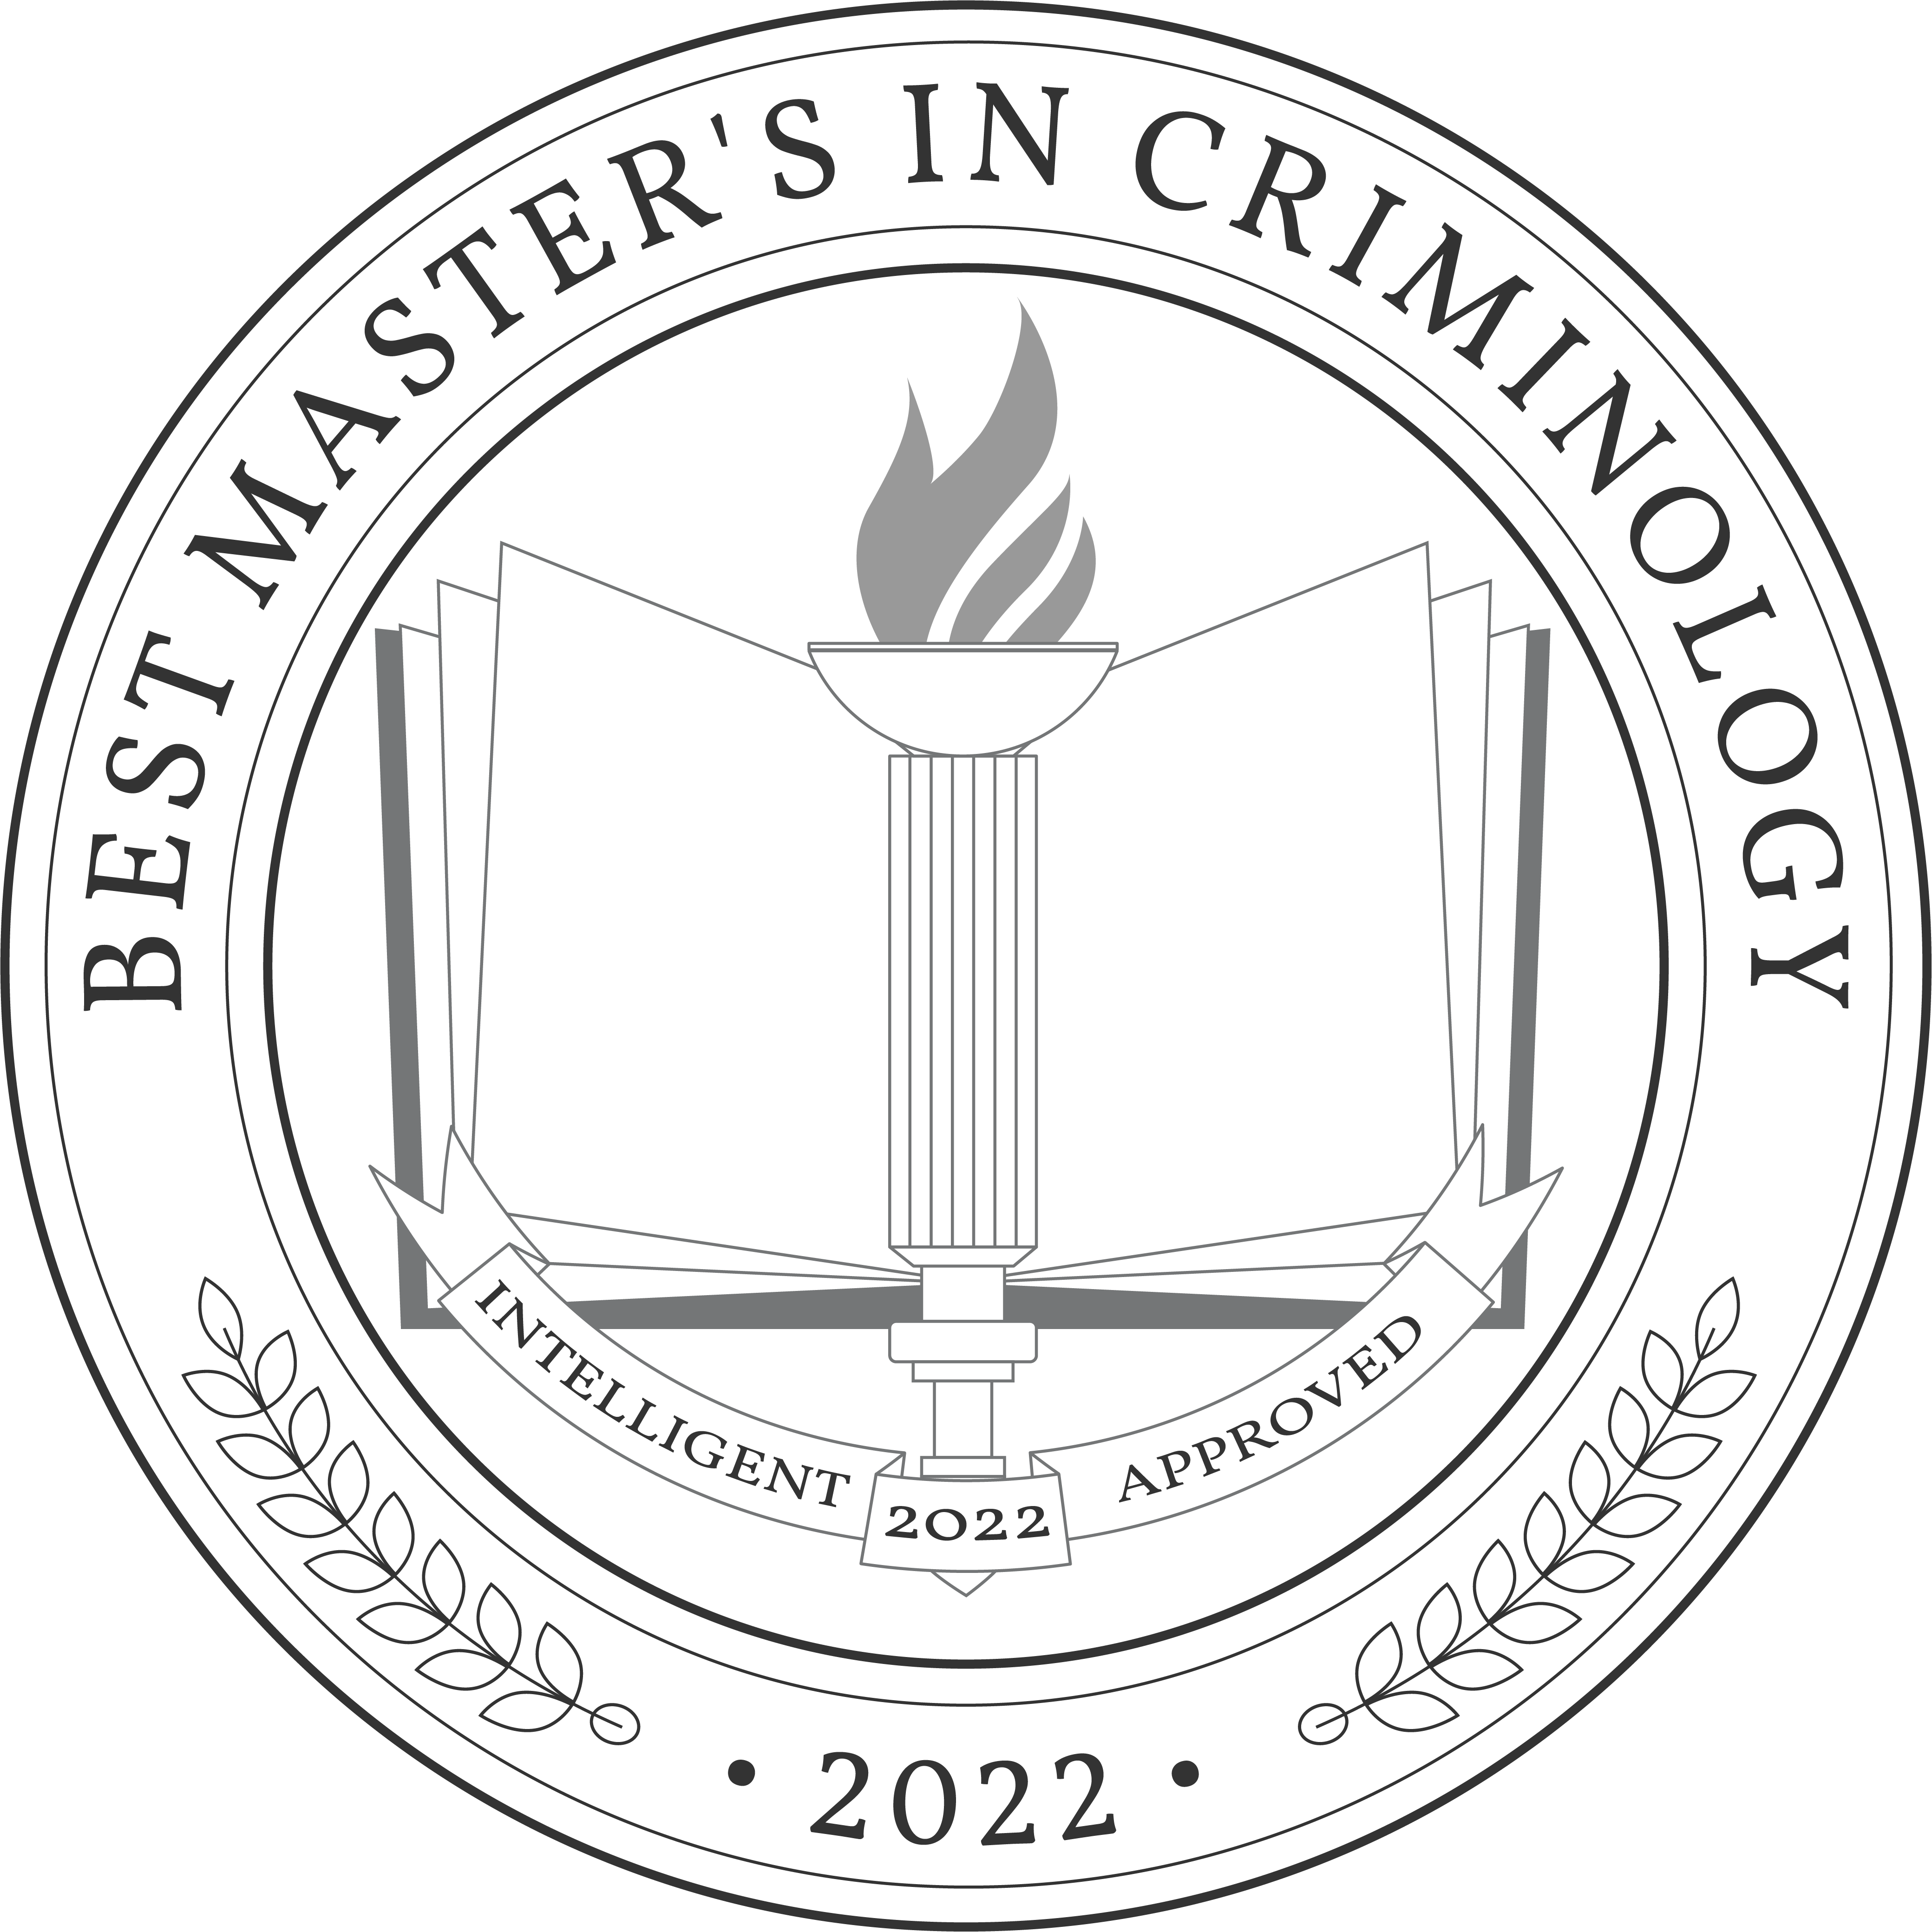 Best Master's in Criminology Degree Programs